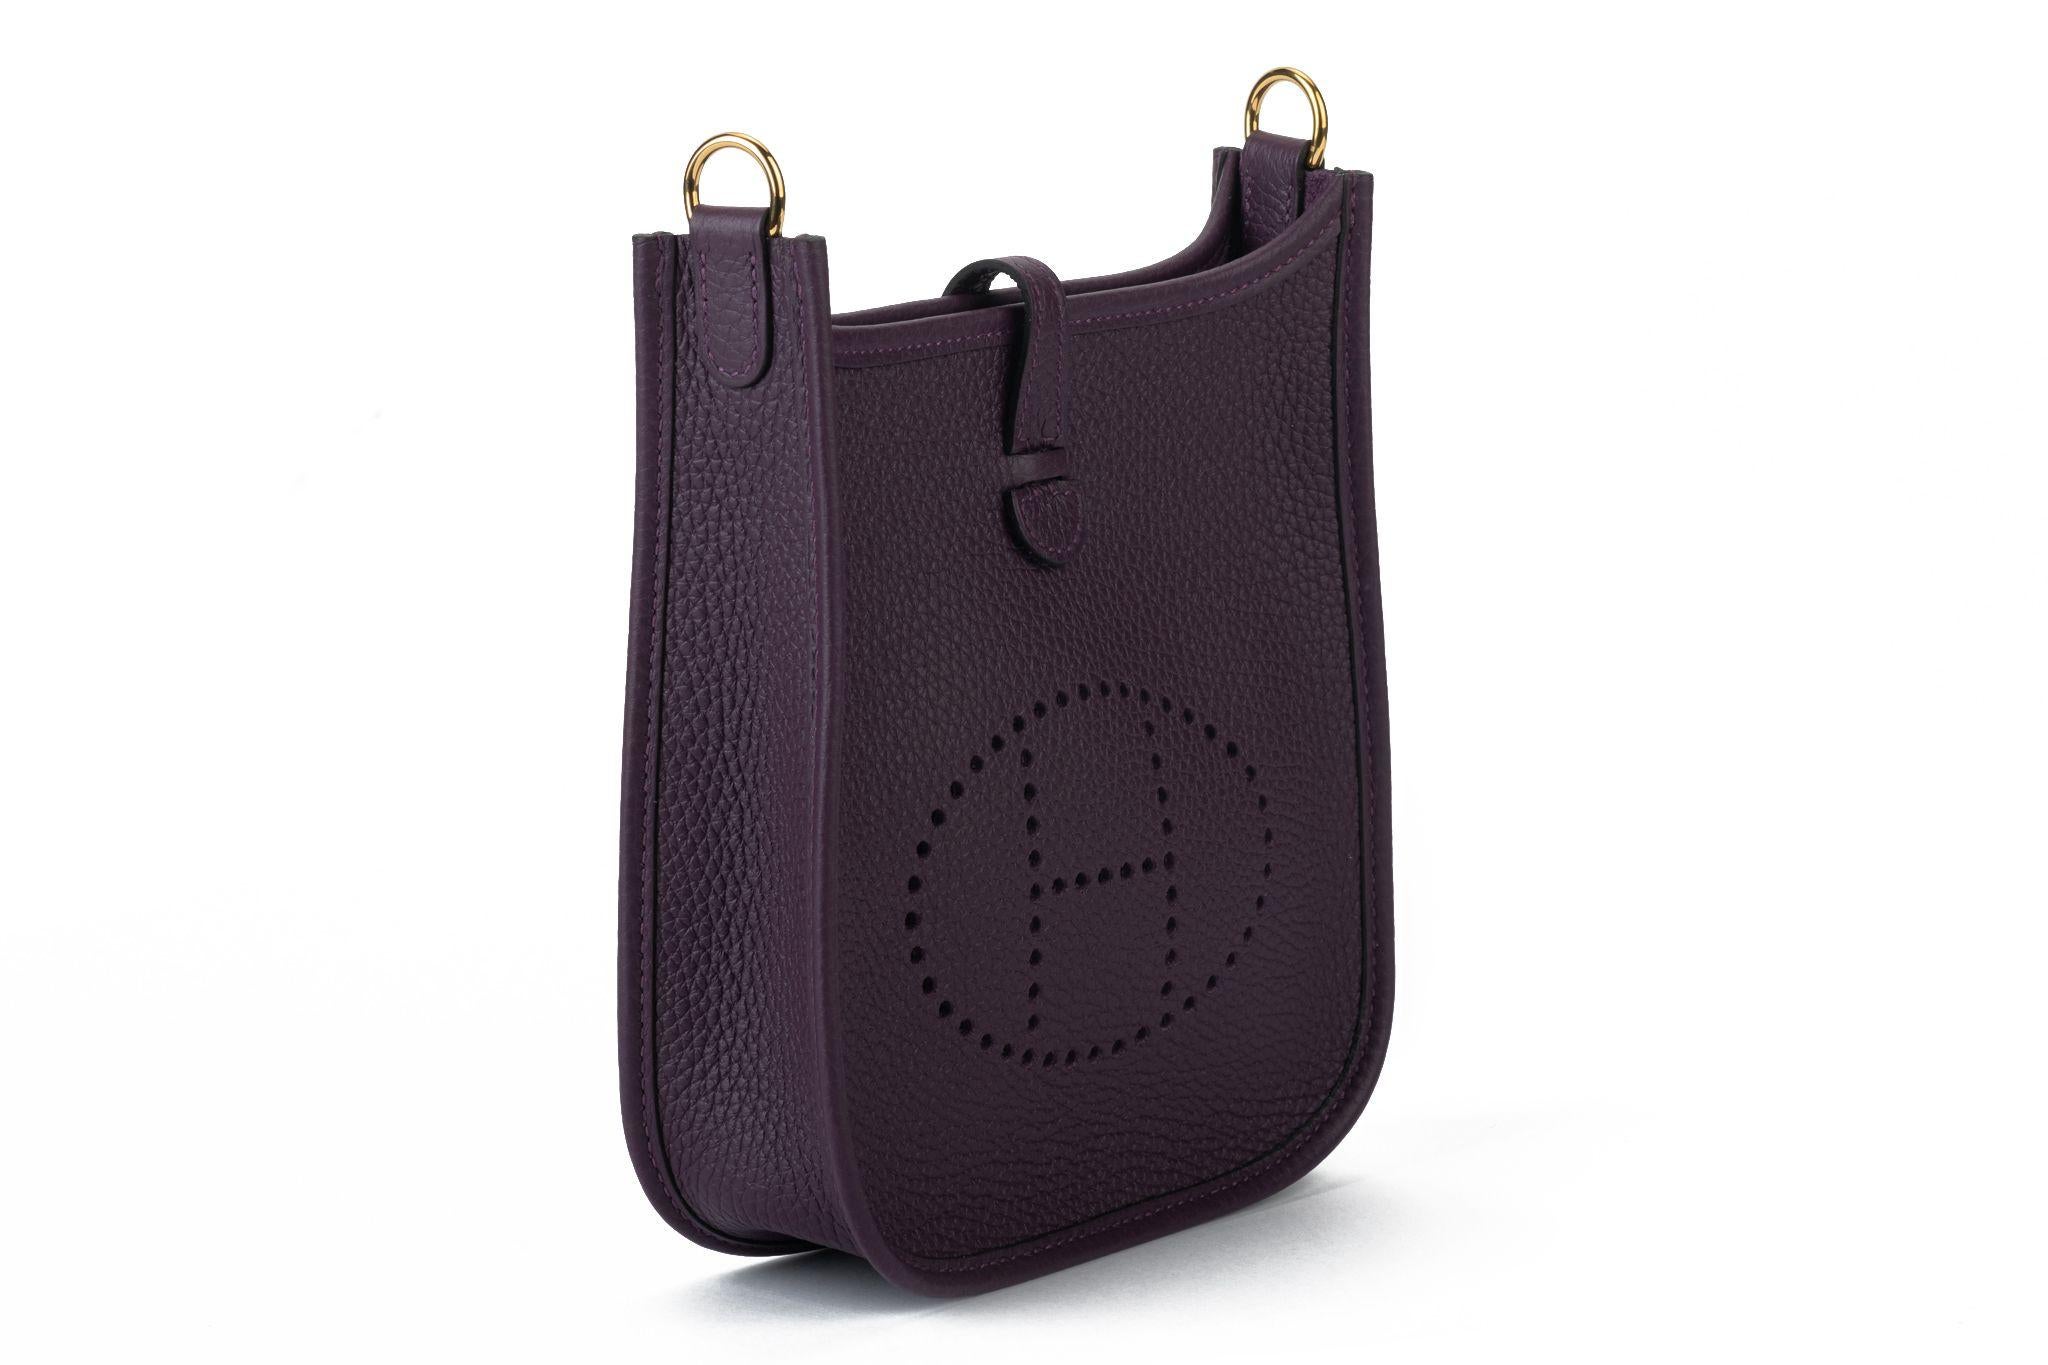 Hermès Marke neu in Box Cassis Clemence Leder Cross Body Bag mit Goldton Hardware. Datumsstempel U für 2022. Kommt mit kleinem und großem Schutzumschlag, Booklet, Box.